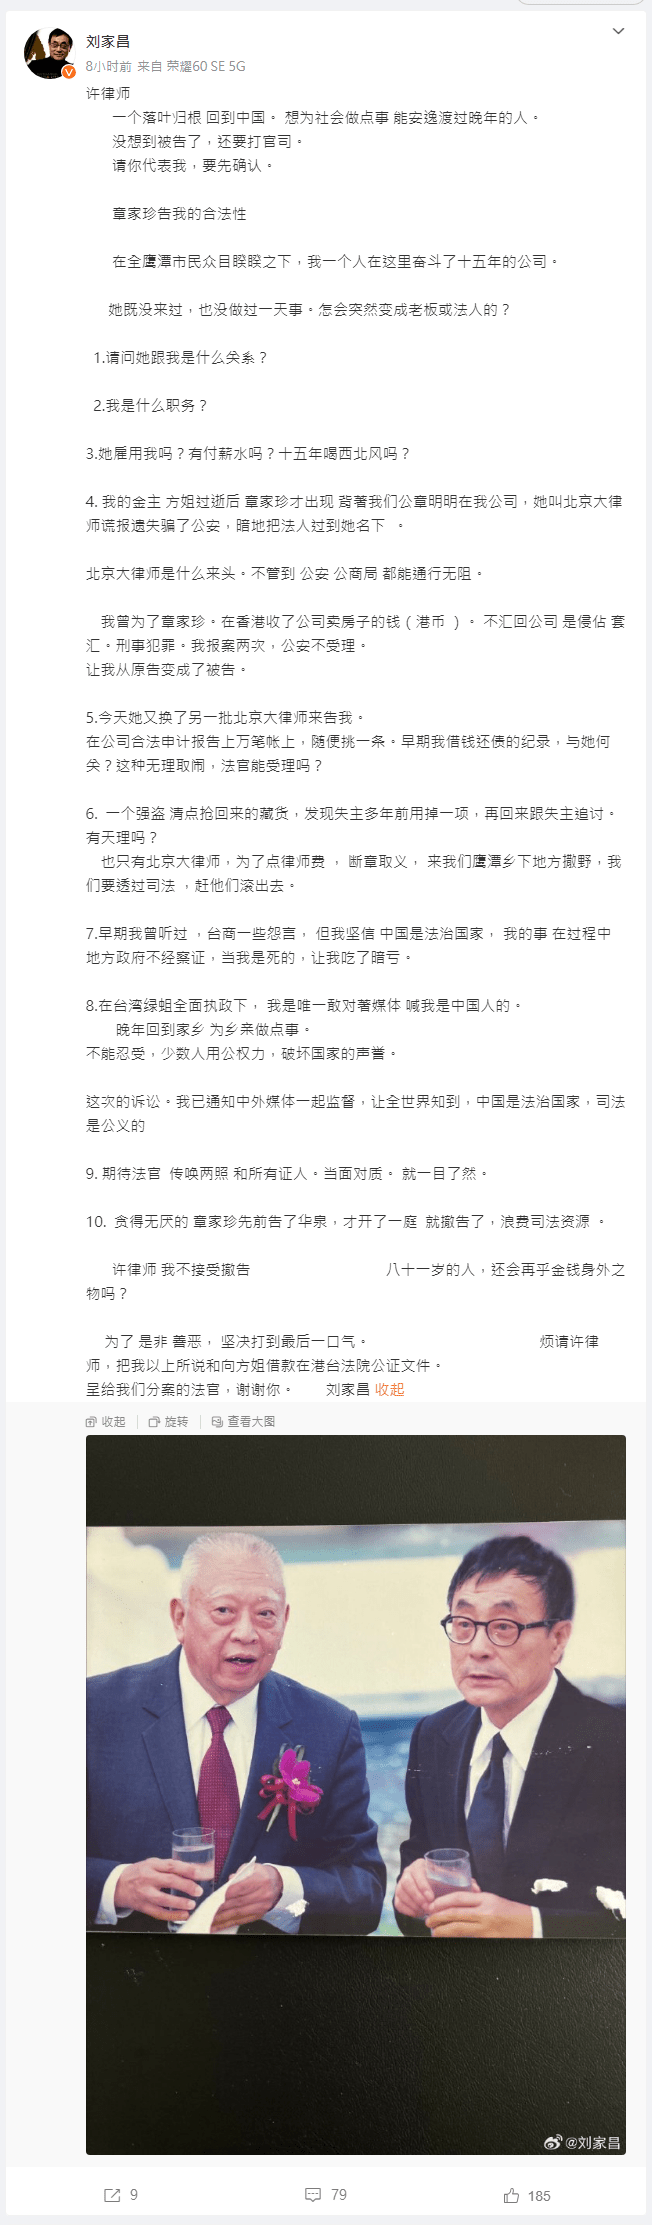 刘家昌今日又在微博发文，最后刘家昌更说：「许律师我不接受撤告，八十一岁的人，还会再乎金钱身外之物吗？为了是非善恶，坚决打到最后一口气。」